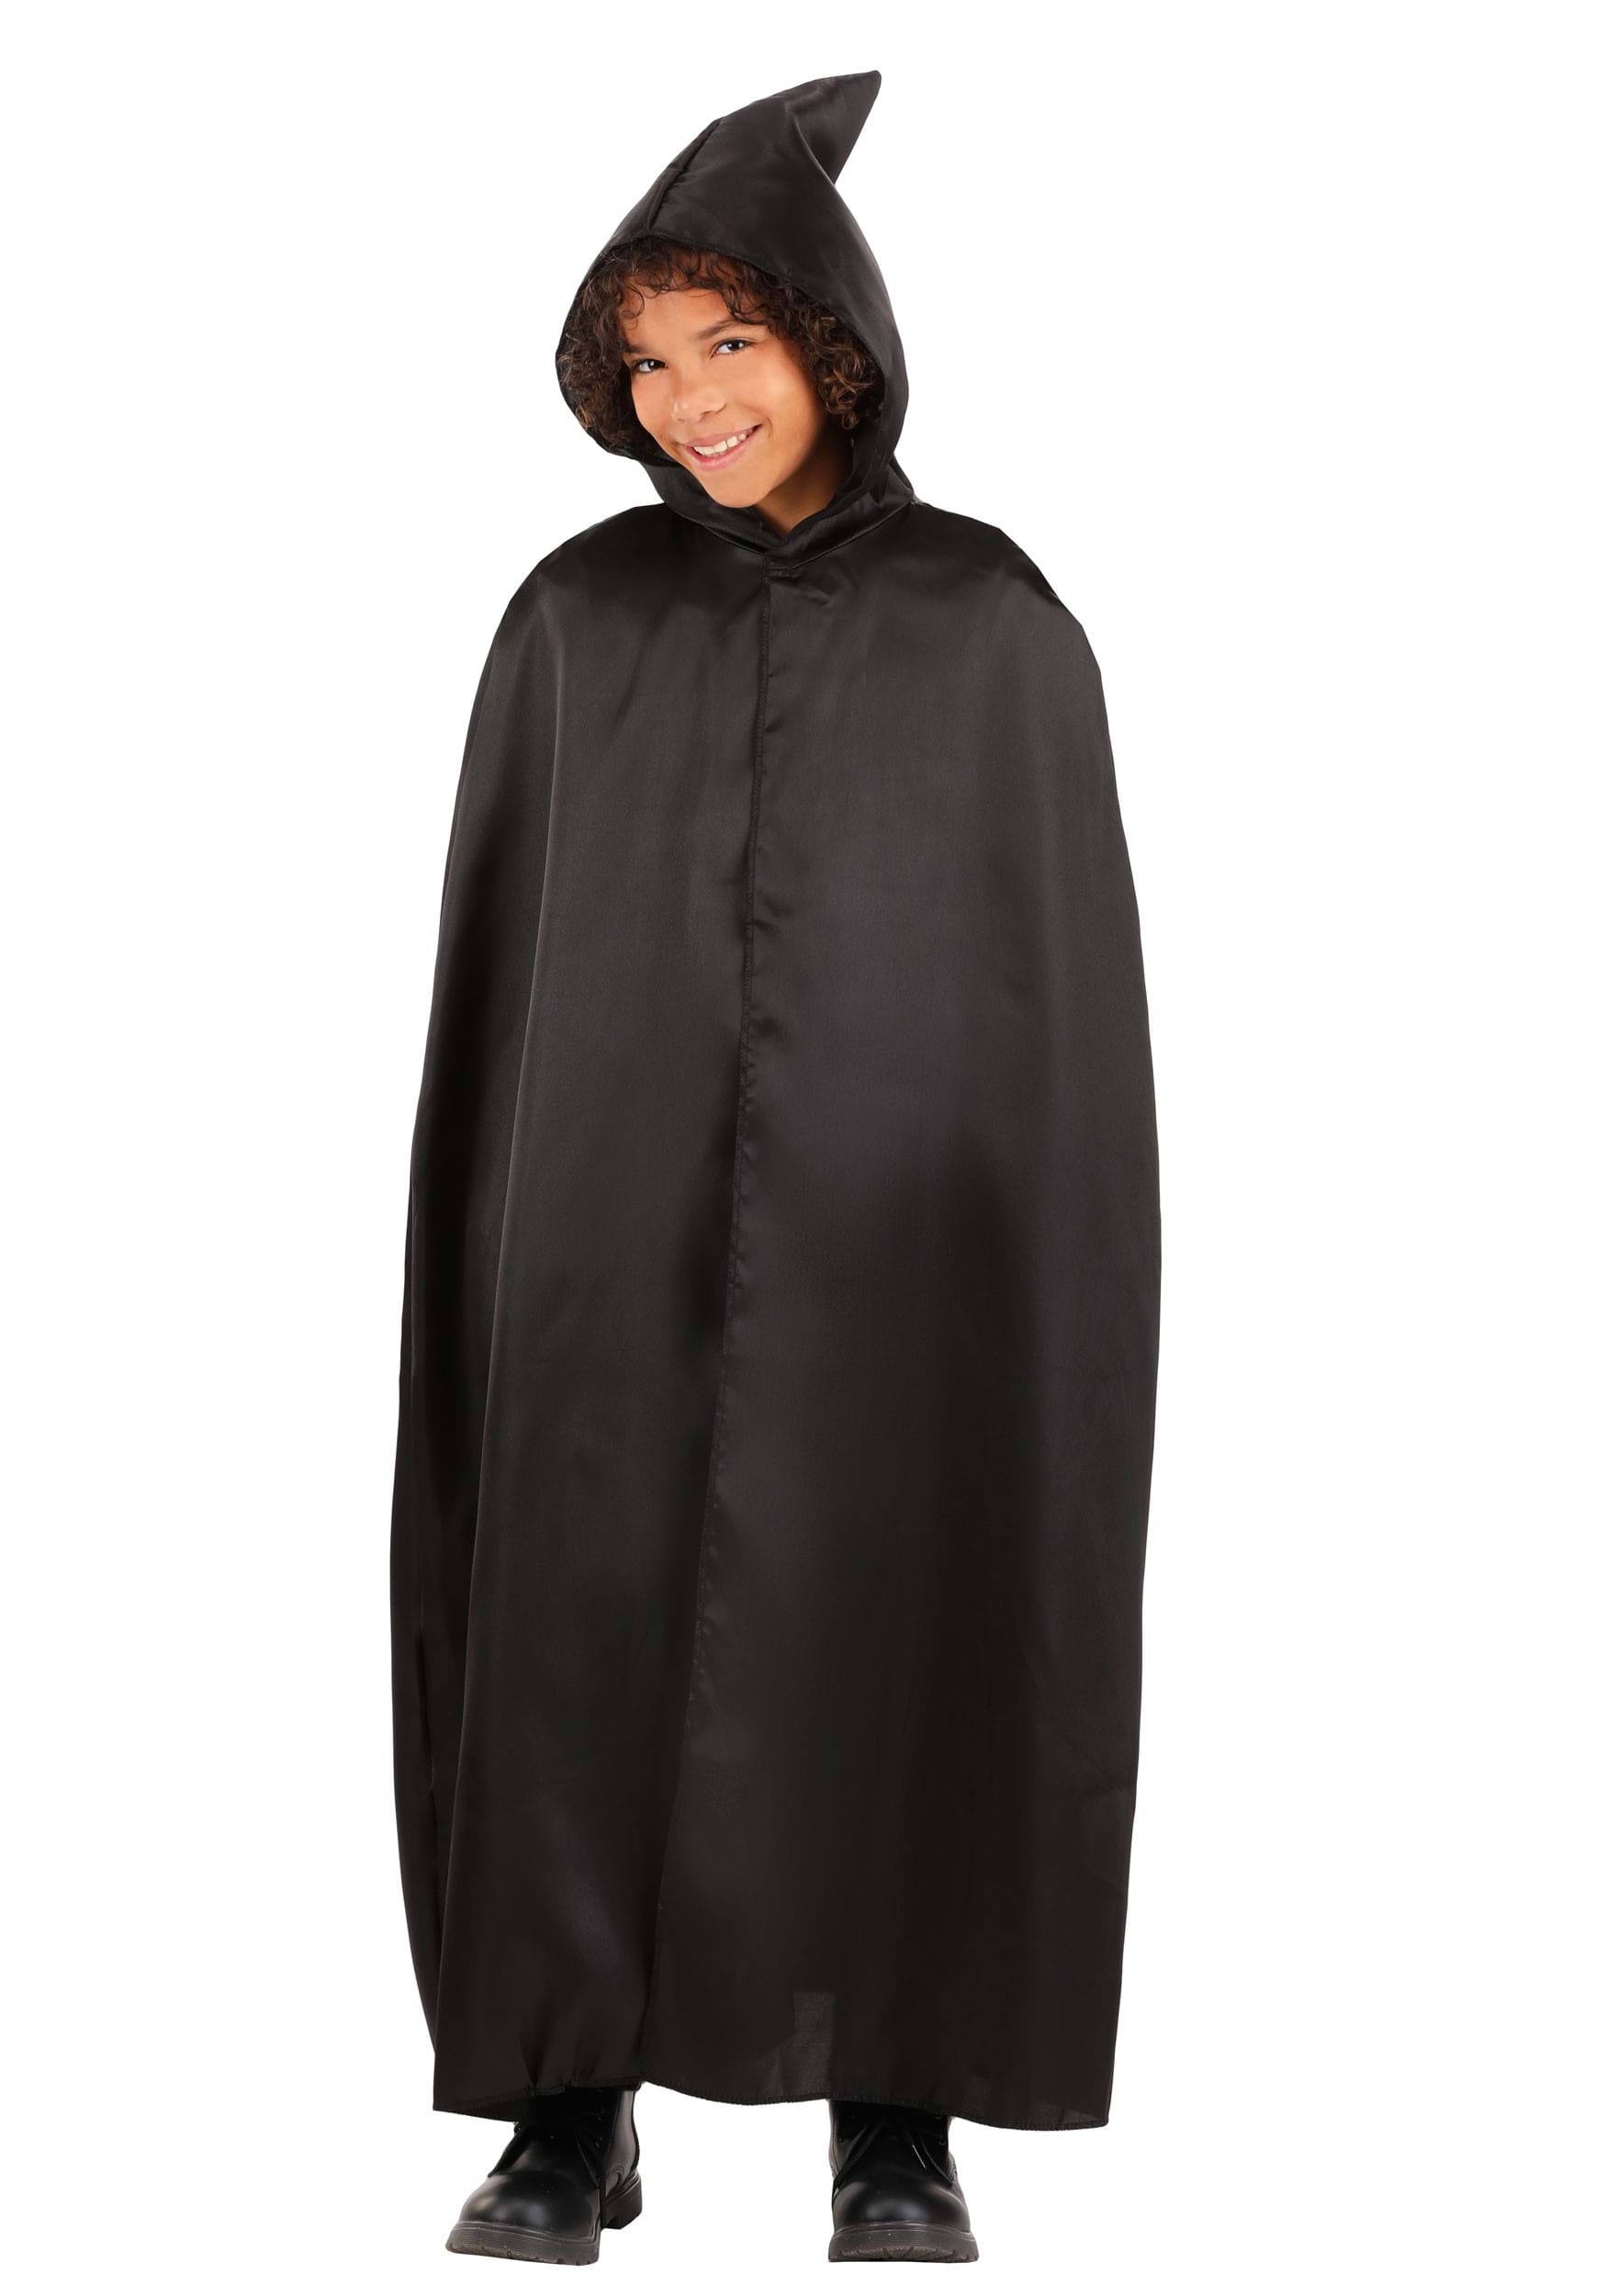 Children's Black Hooded Cloak , Costume Cloak